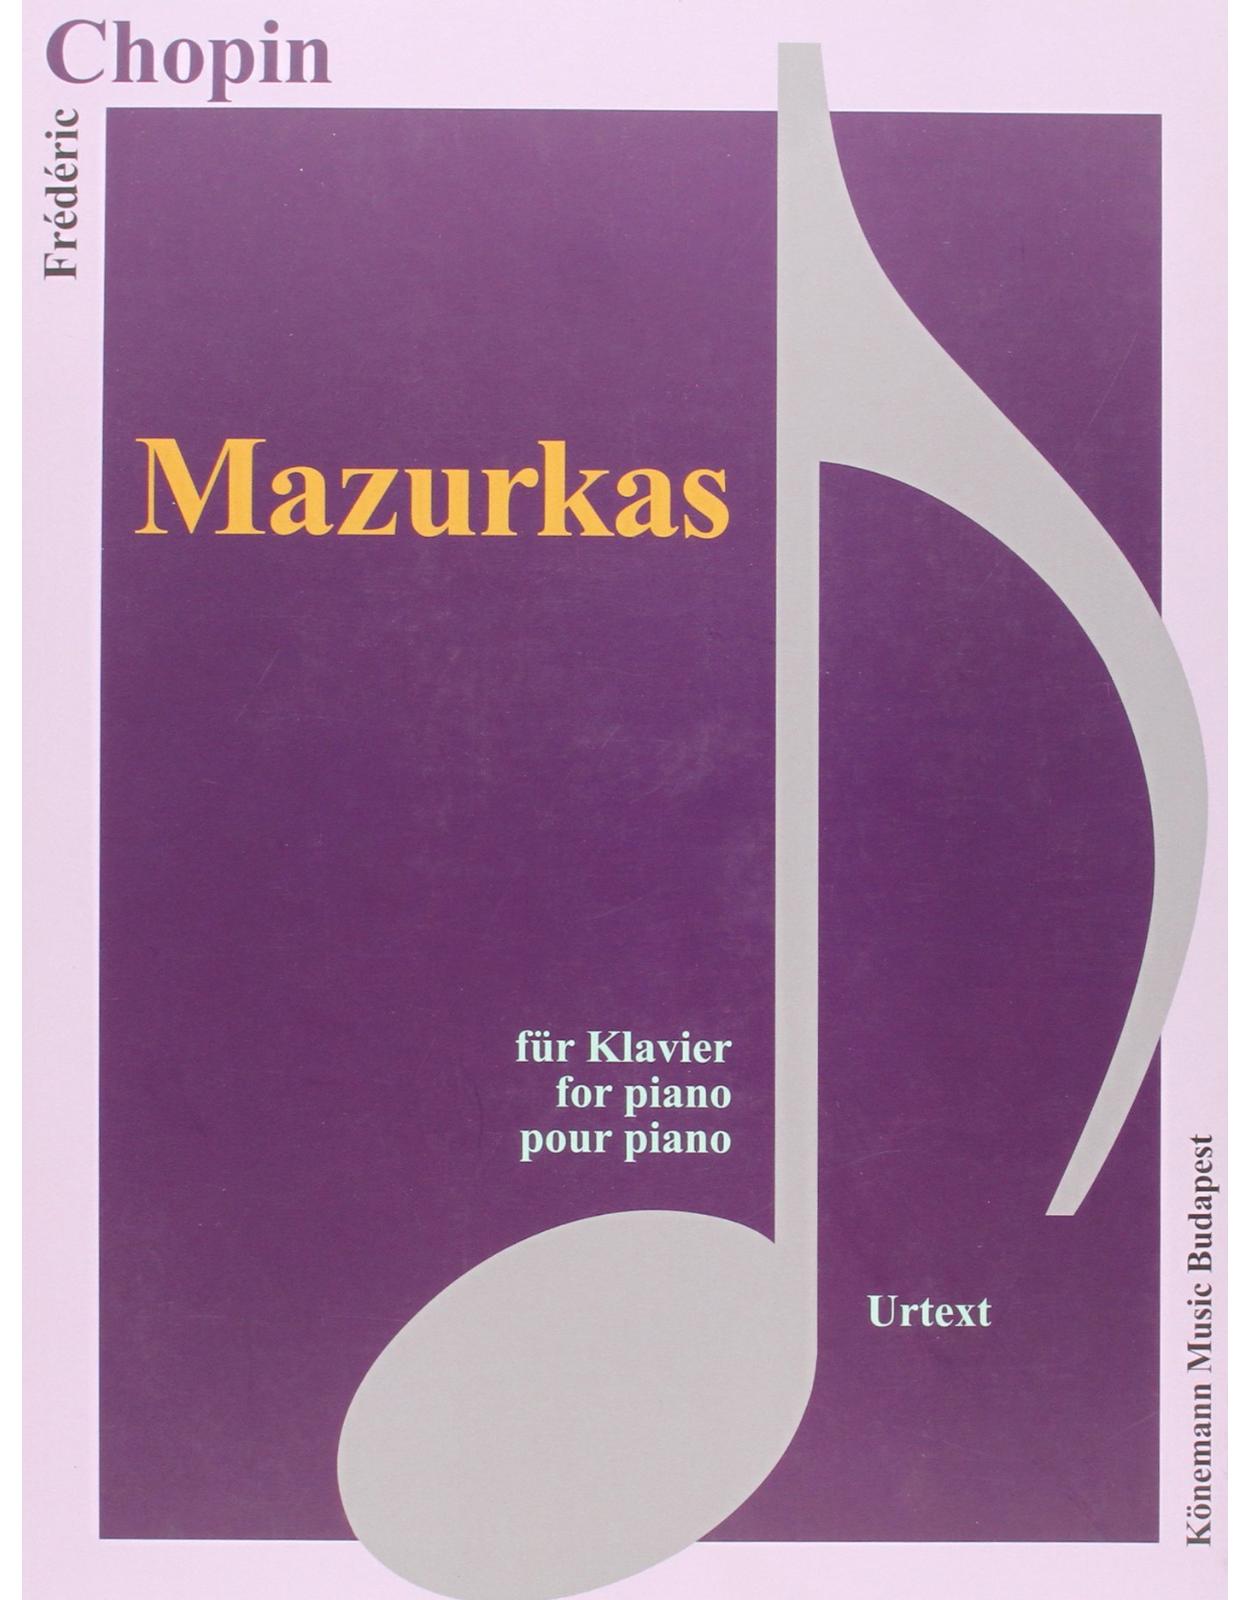 Chopin, Mazurkas